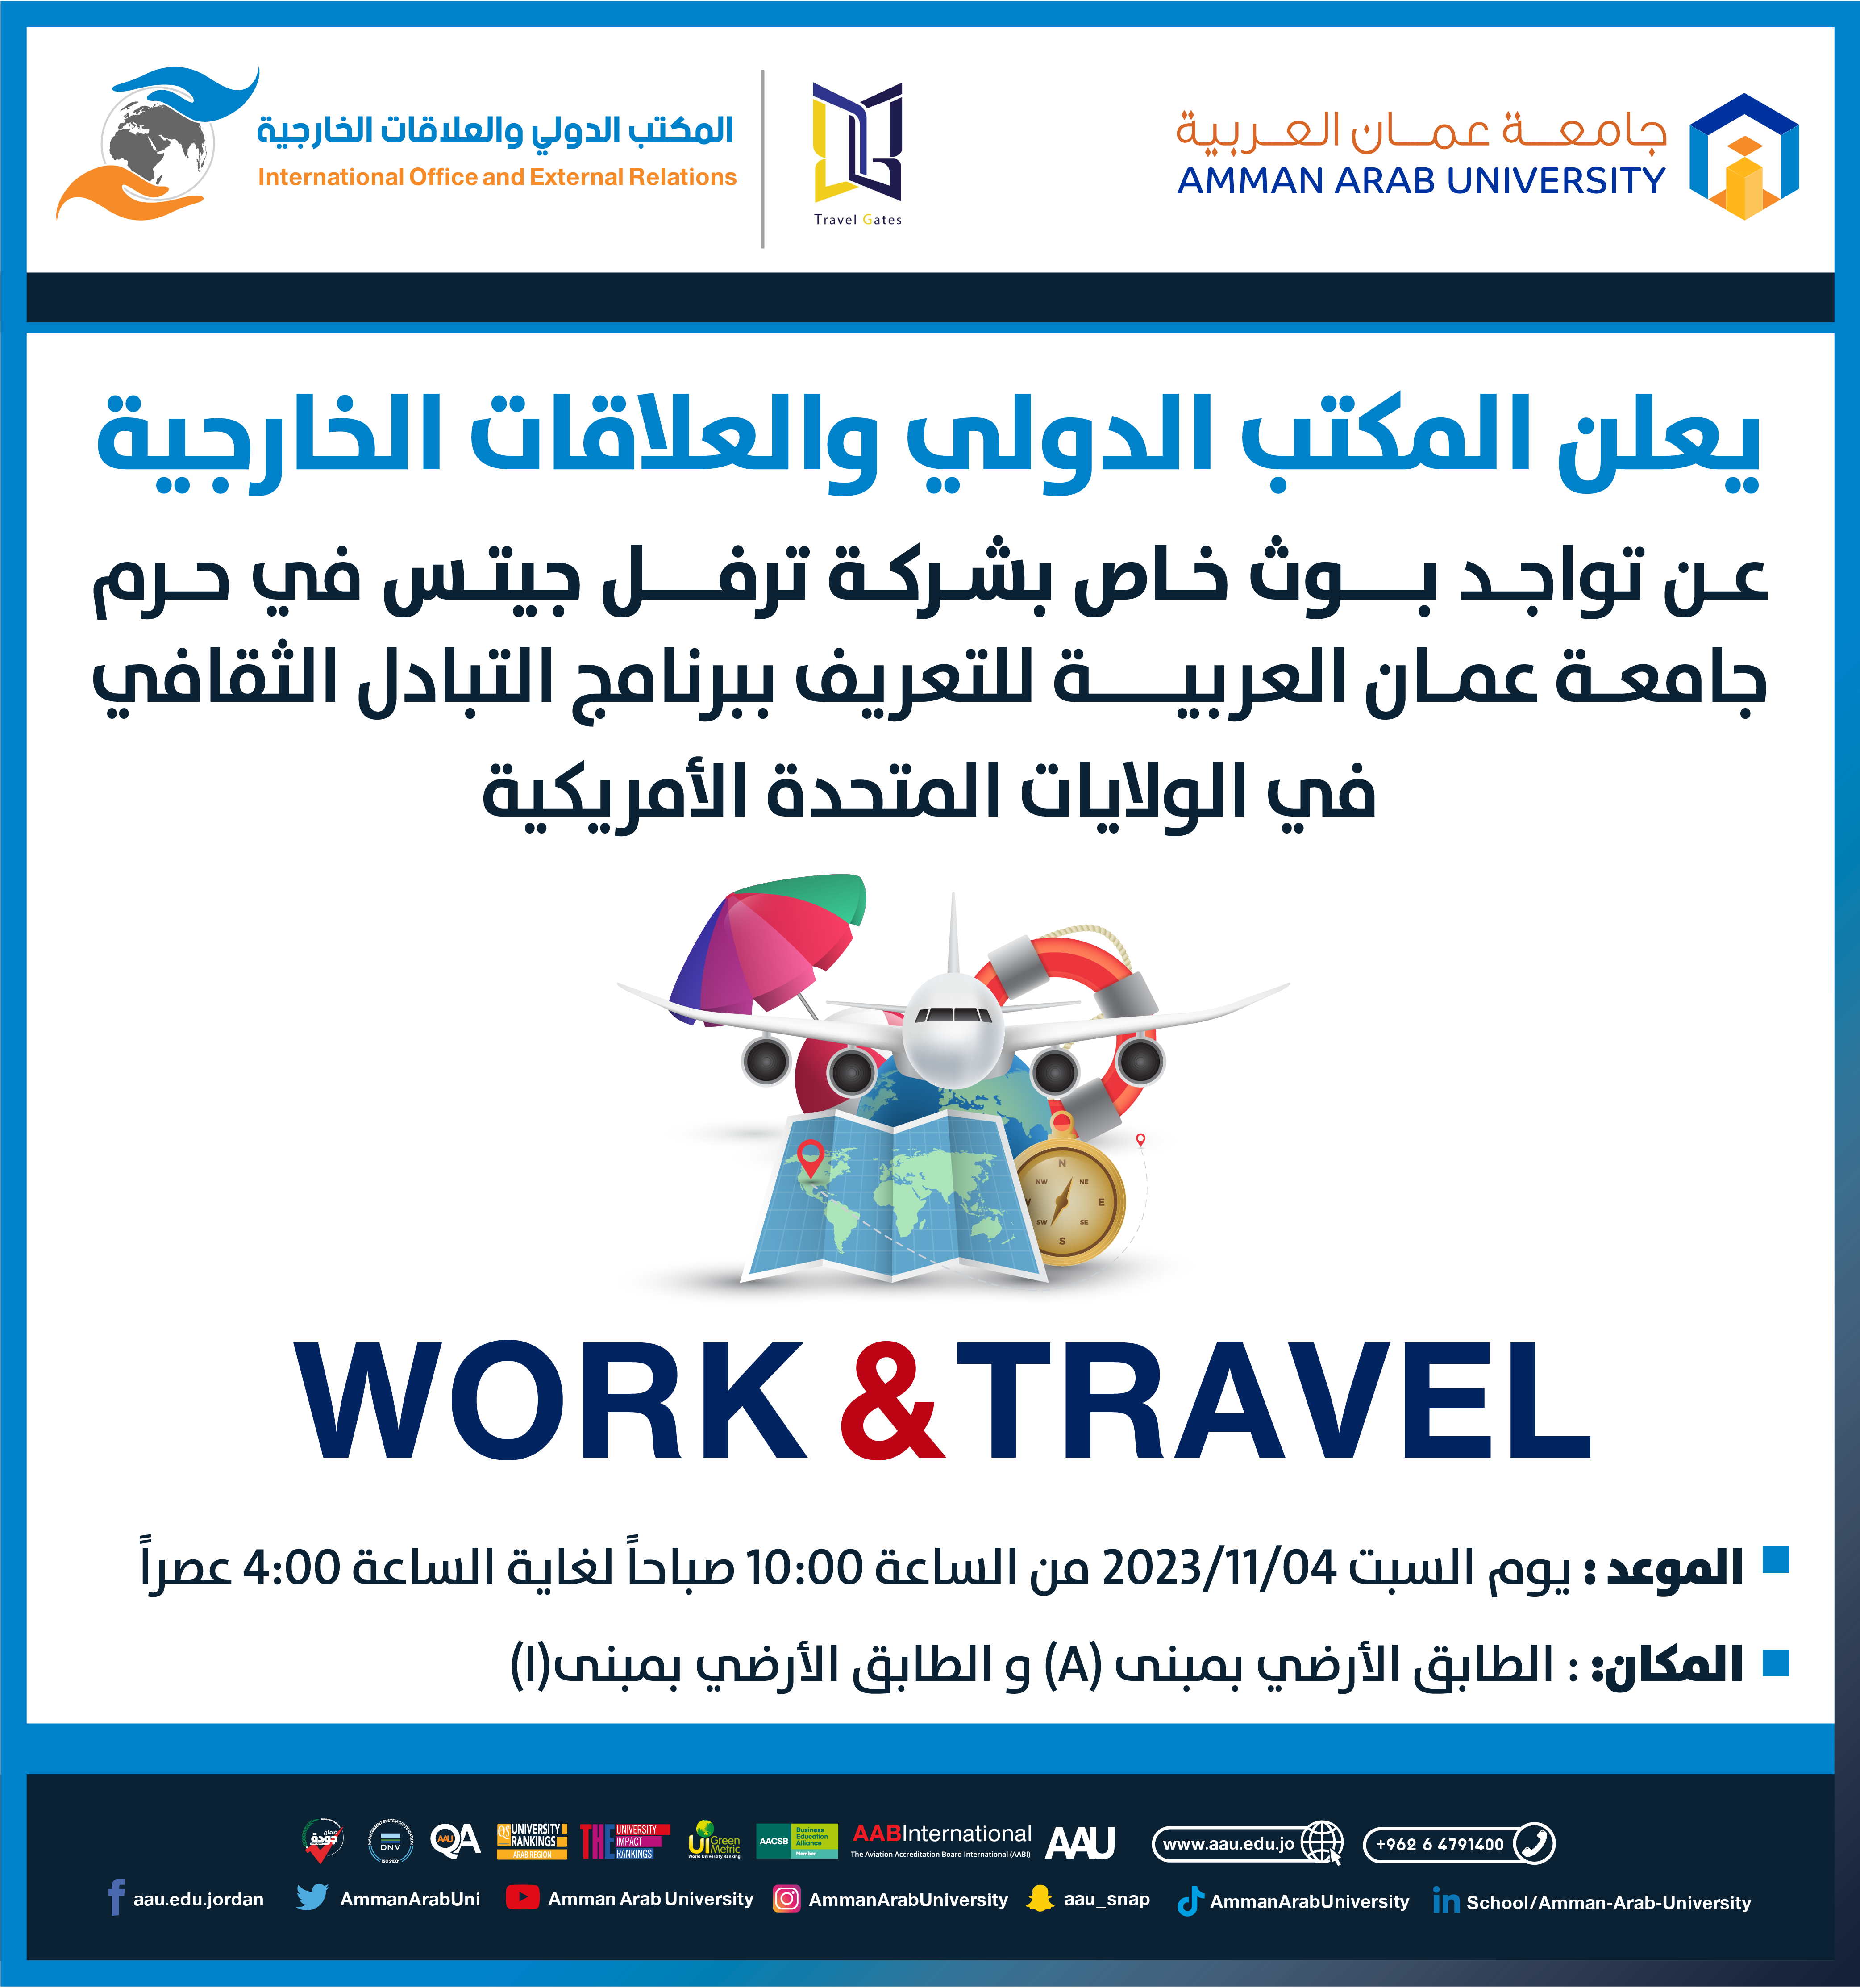 اعلان صادر عن المكتب الدولي والعلاقات الخارجية - Work & Travel